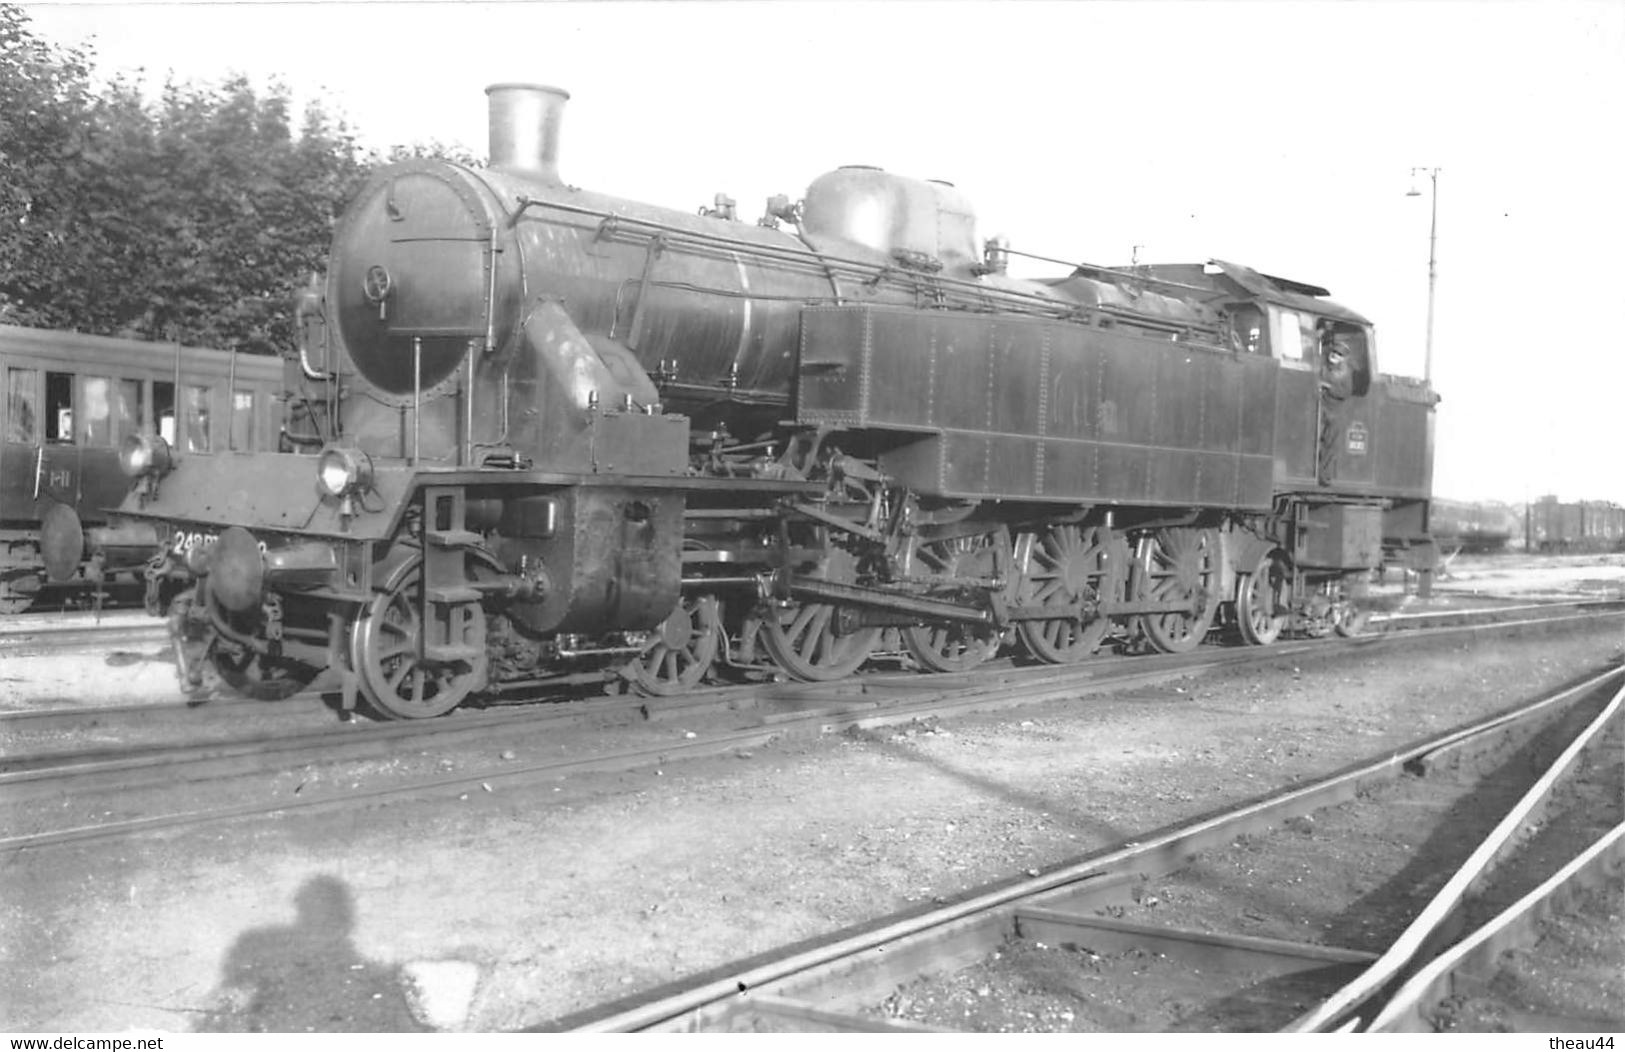 ¤¤  -  Cliché D'une Locomotive Du P.L.M.   -  Cheminots   -  Train  -   Chemin De Fer  -  ¤¤ - Materiale